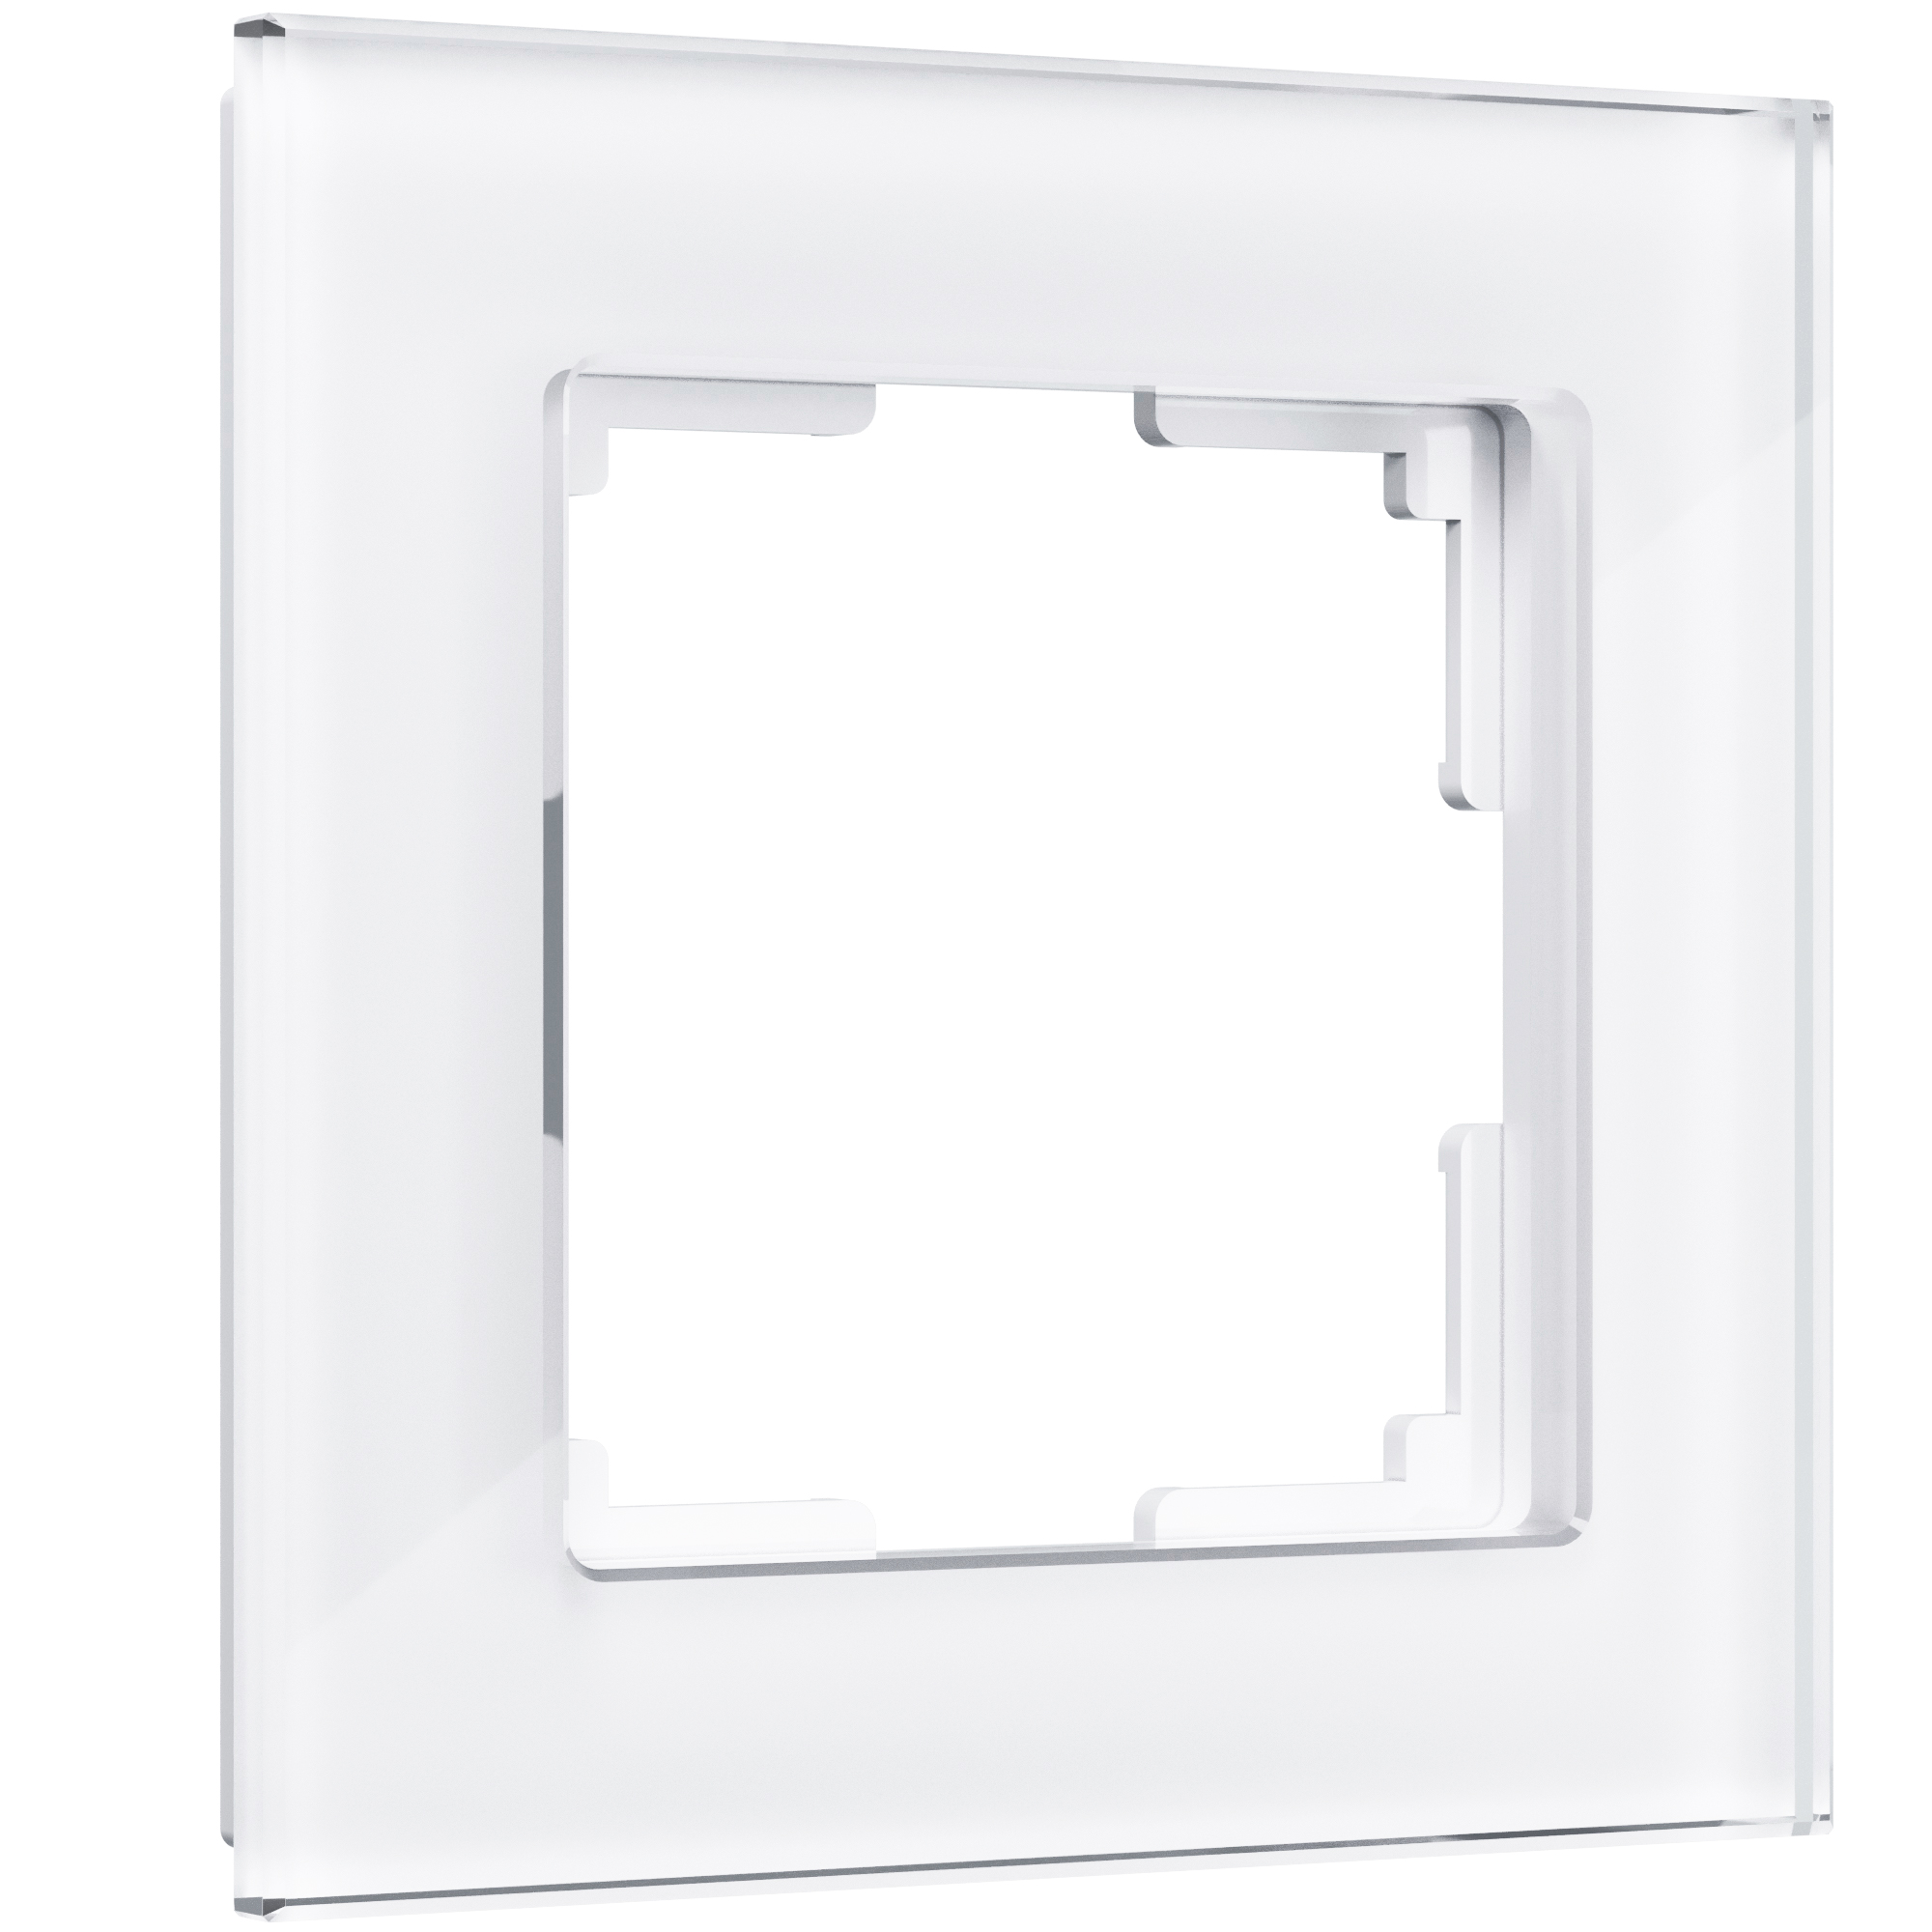 Рамка для розетки / выключателя на 1 пост Werkel W0011101 Favorit белый стекло рамка на 1 пост werkel favorit w0011111 4690389159497